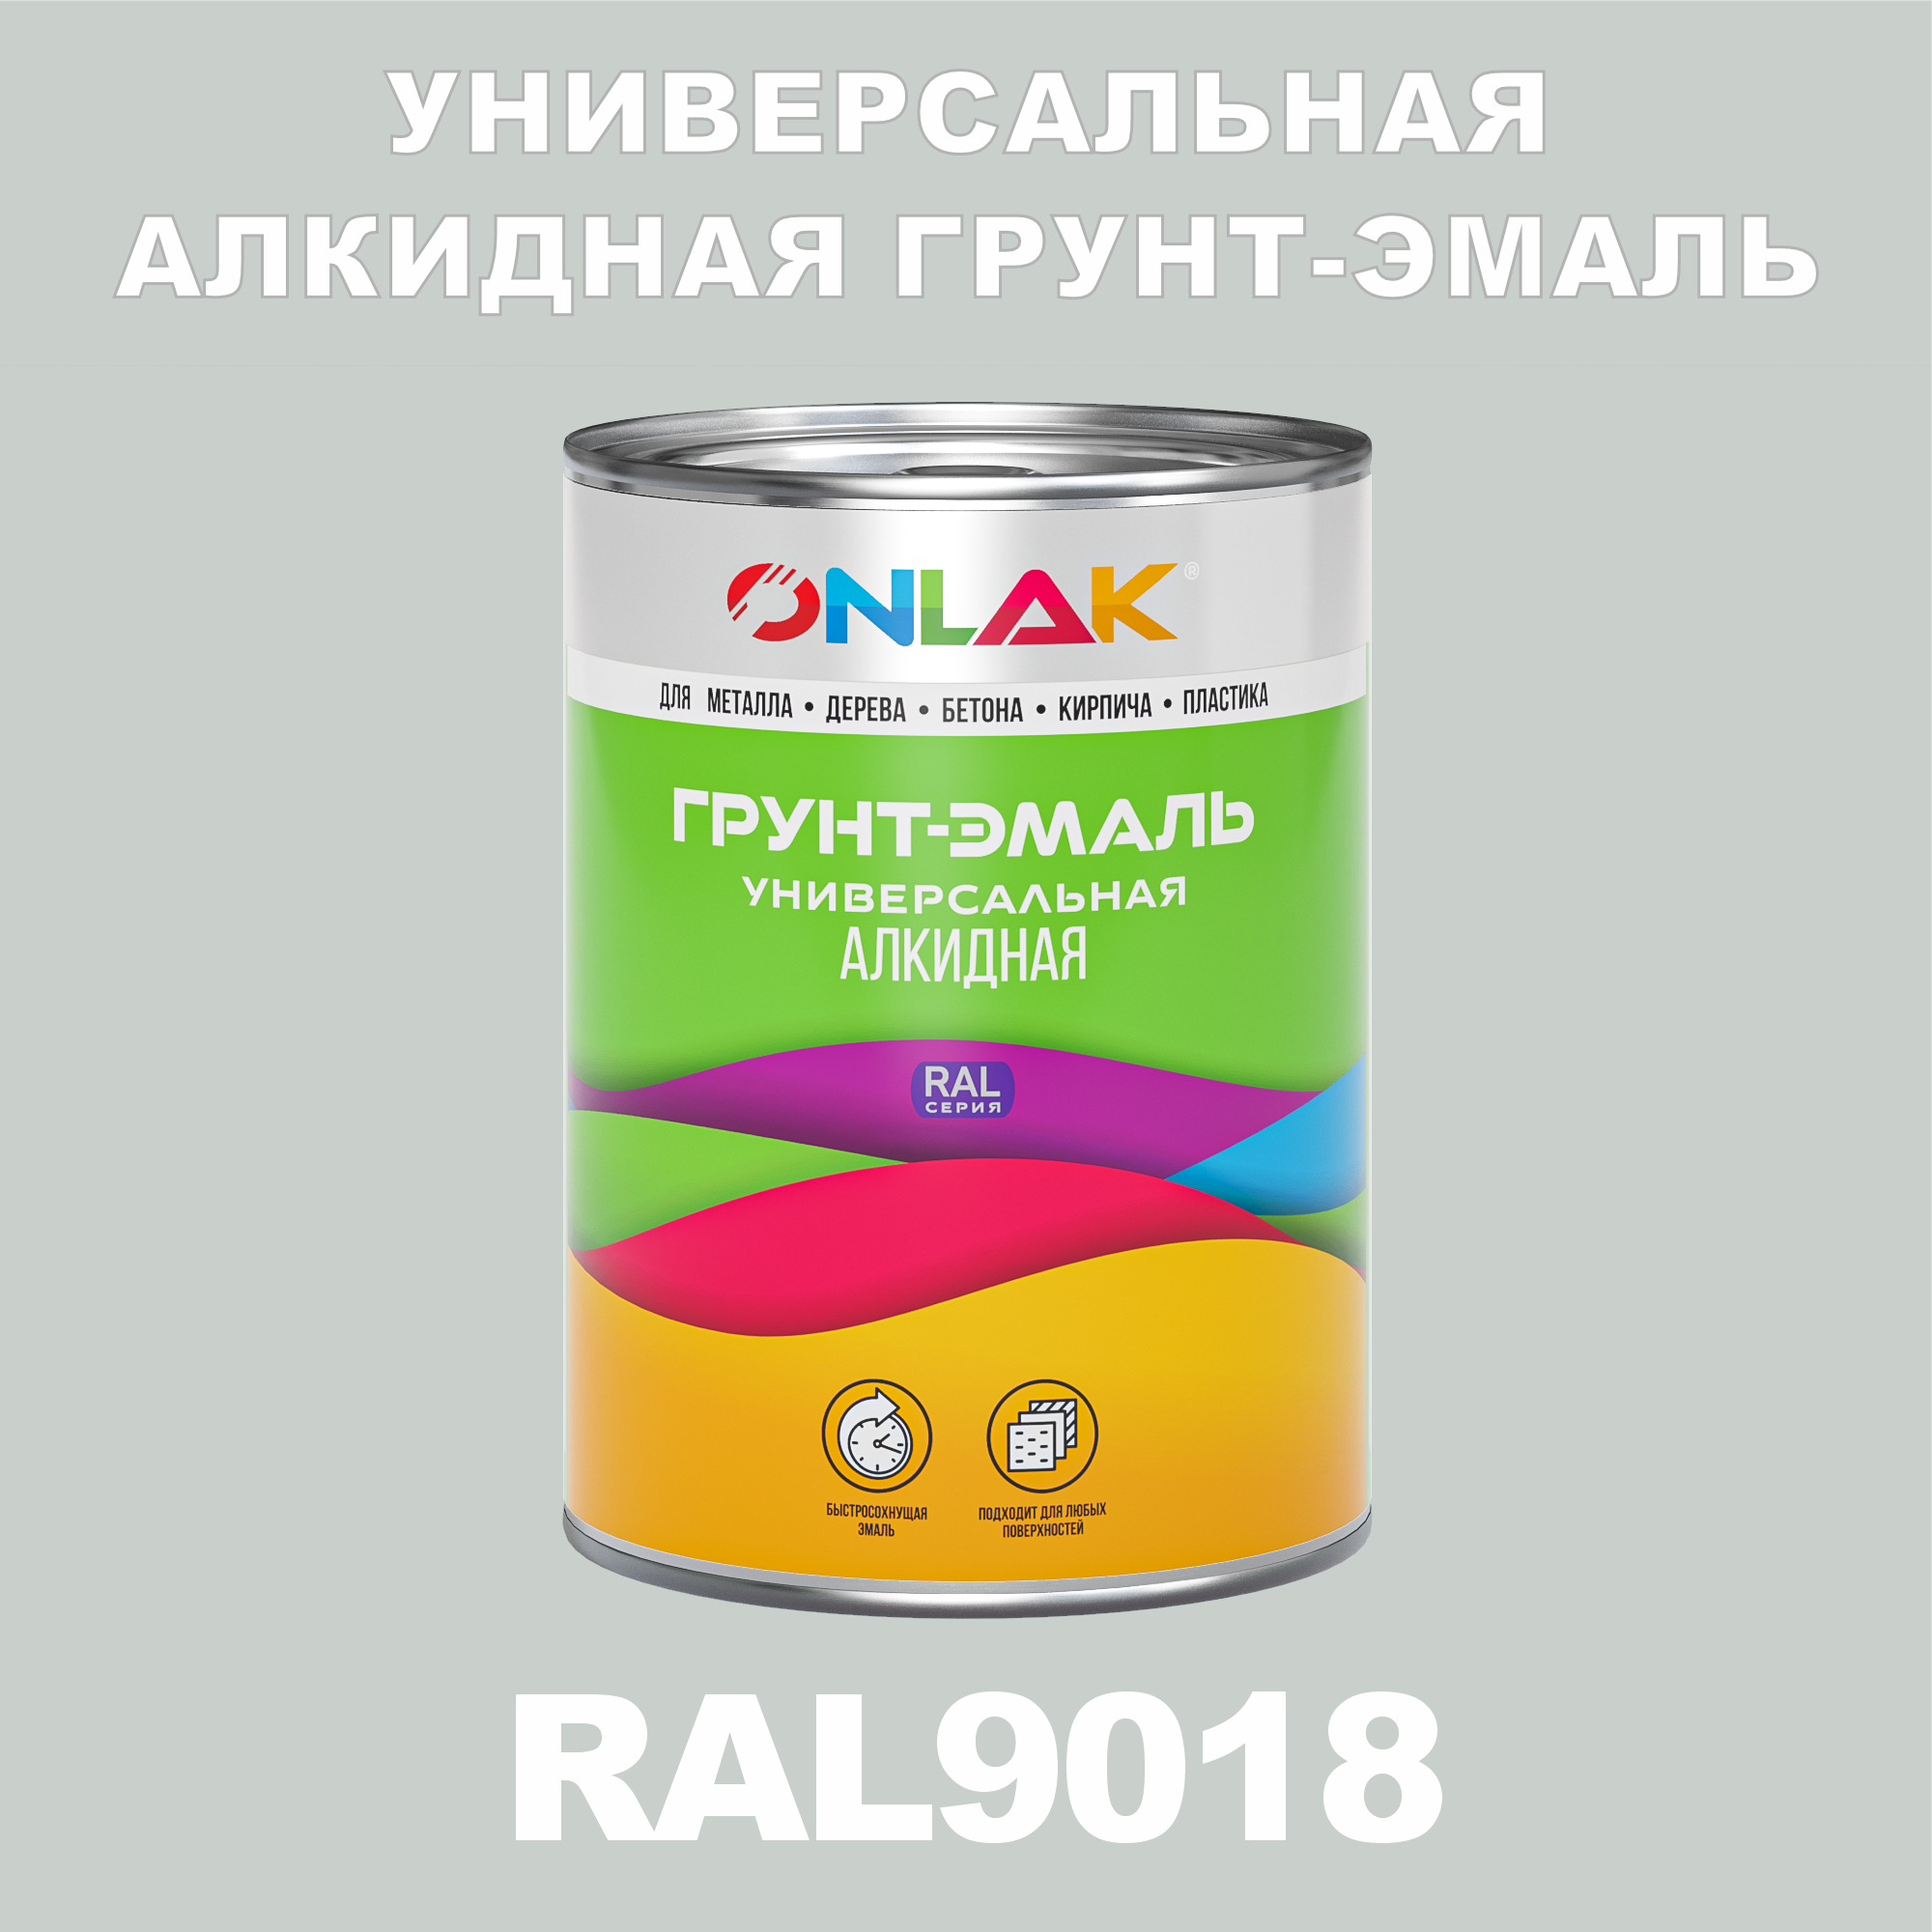 Грунт-эмаль ONLAK 1К RAL9018 антикоррозионная алкидная, по металлу, по ржавчине, 1 кг, термостойкая антикоррозионная эмаль certa